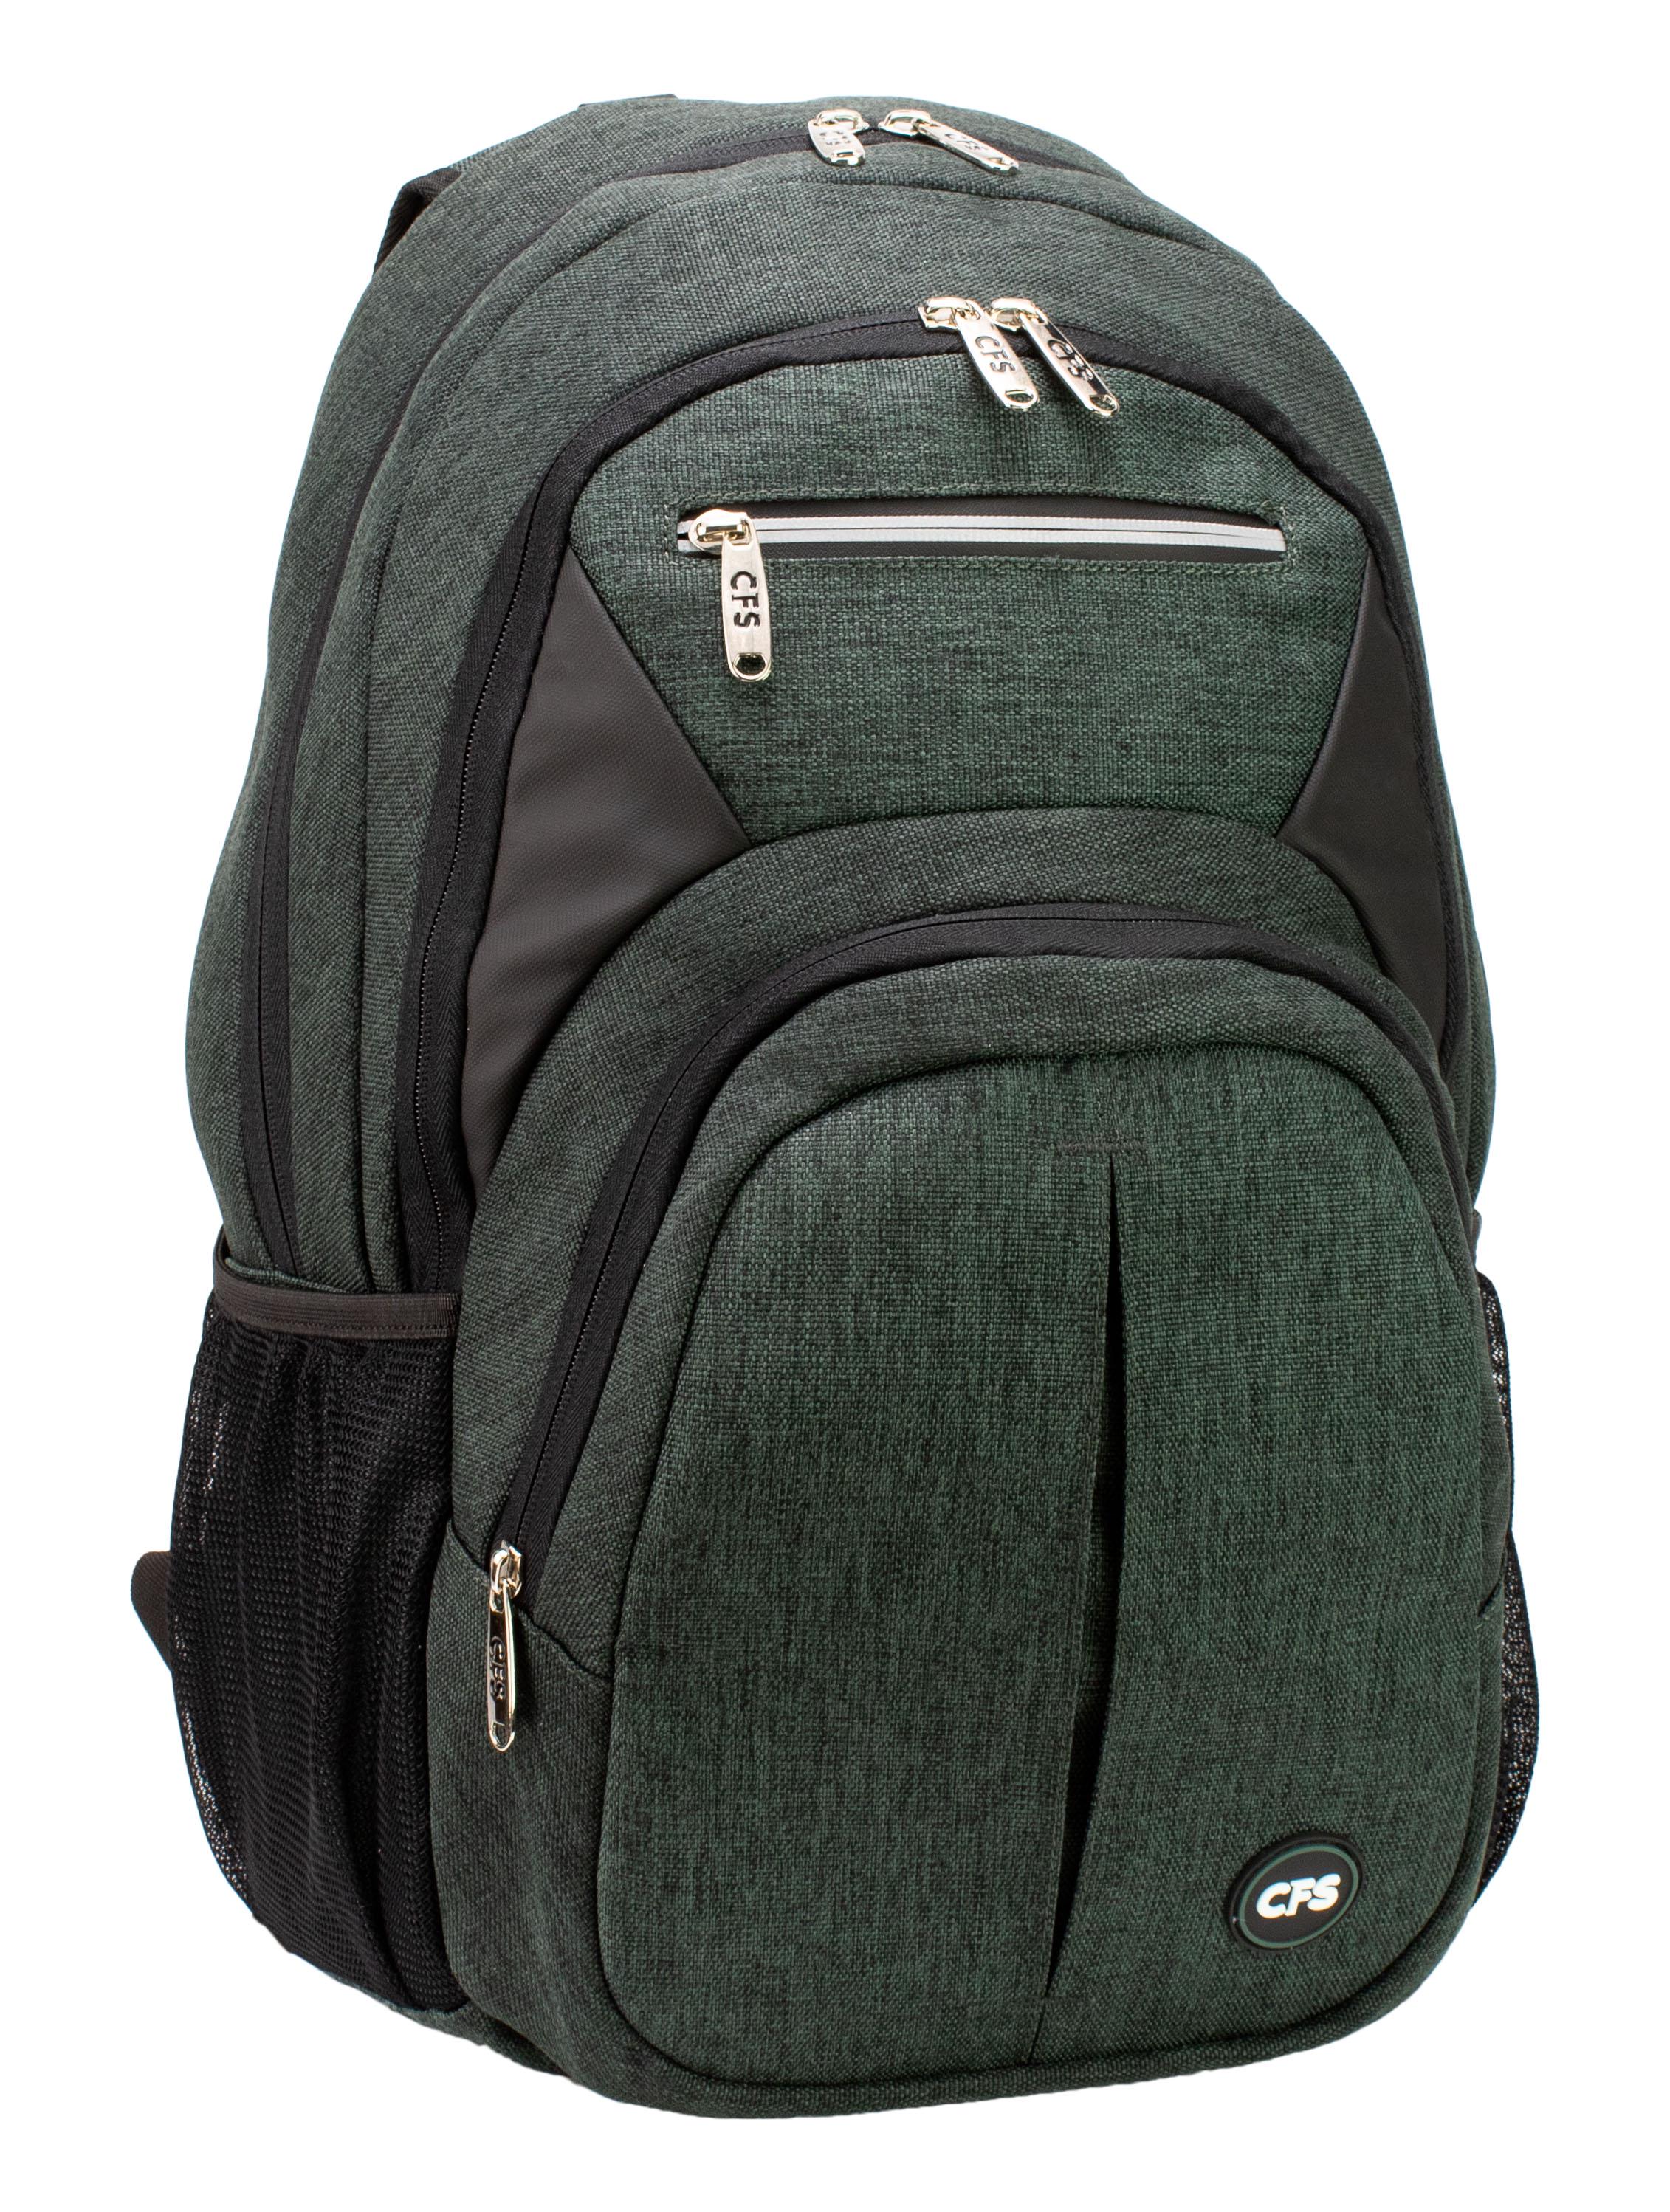 Рюкзак молодежный Cool For School 48x33x22 см 26-35 л Зеленый (CF86746-01)